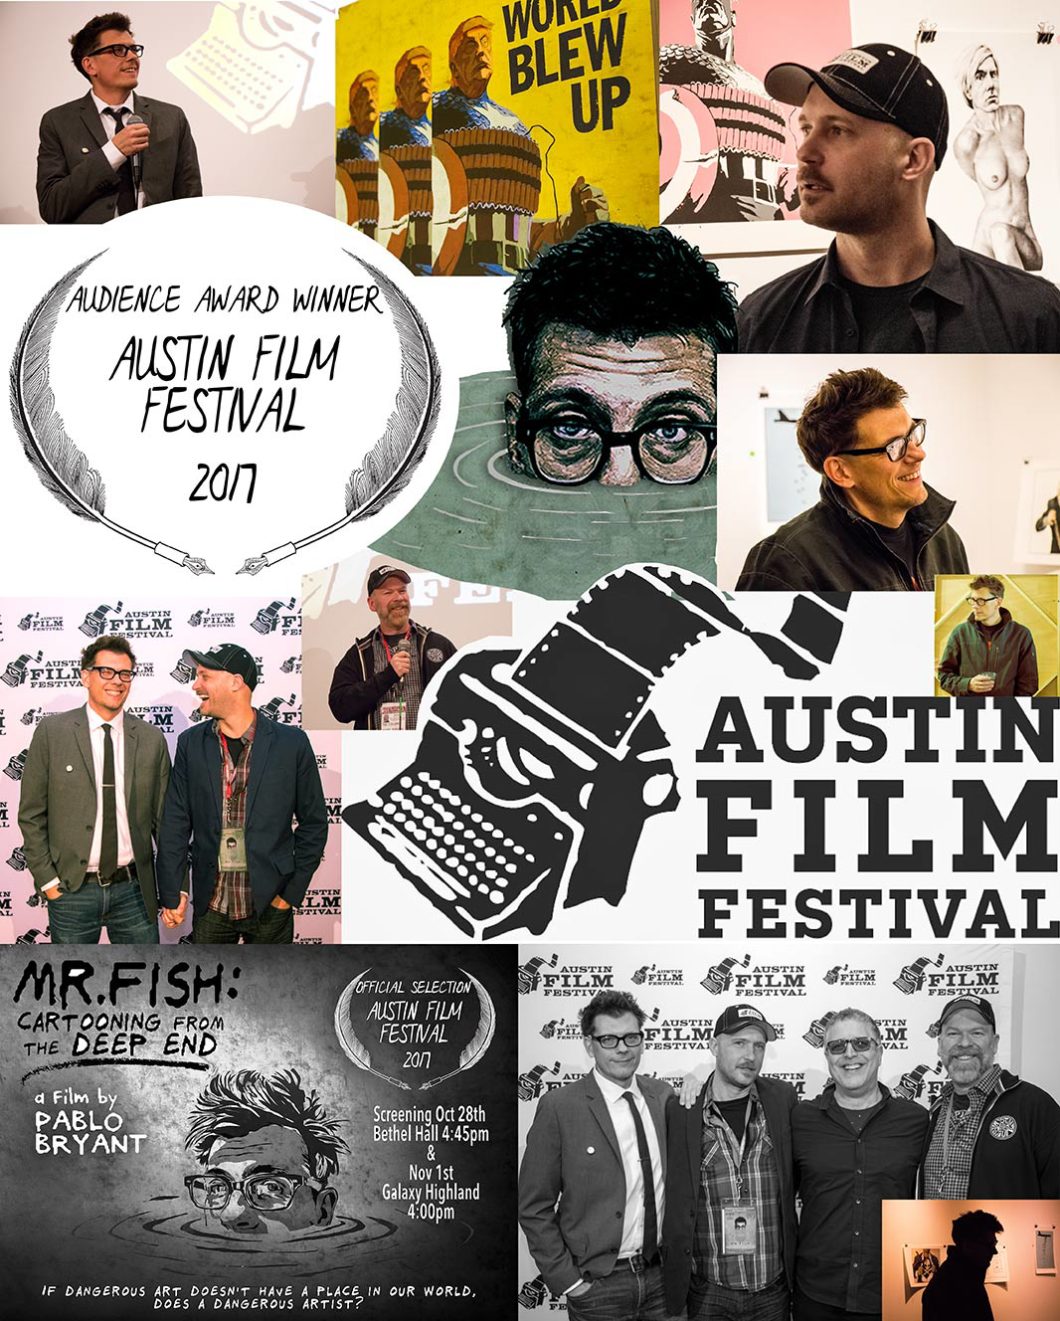 Austin Film Festival Audience Award Winner! Mr. Fish